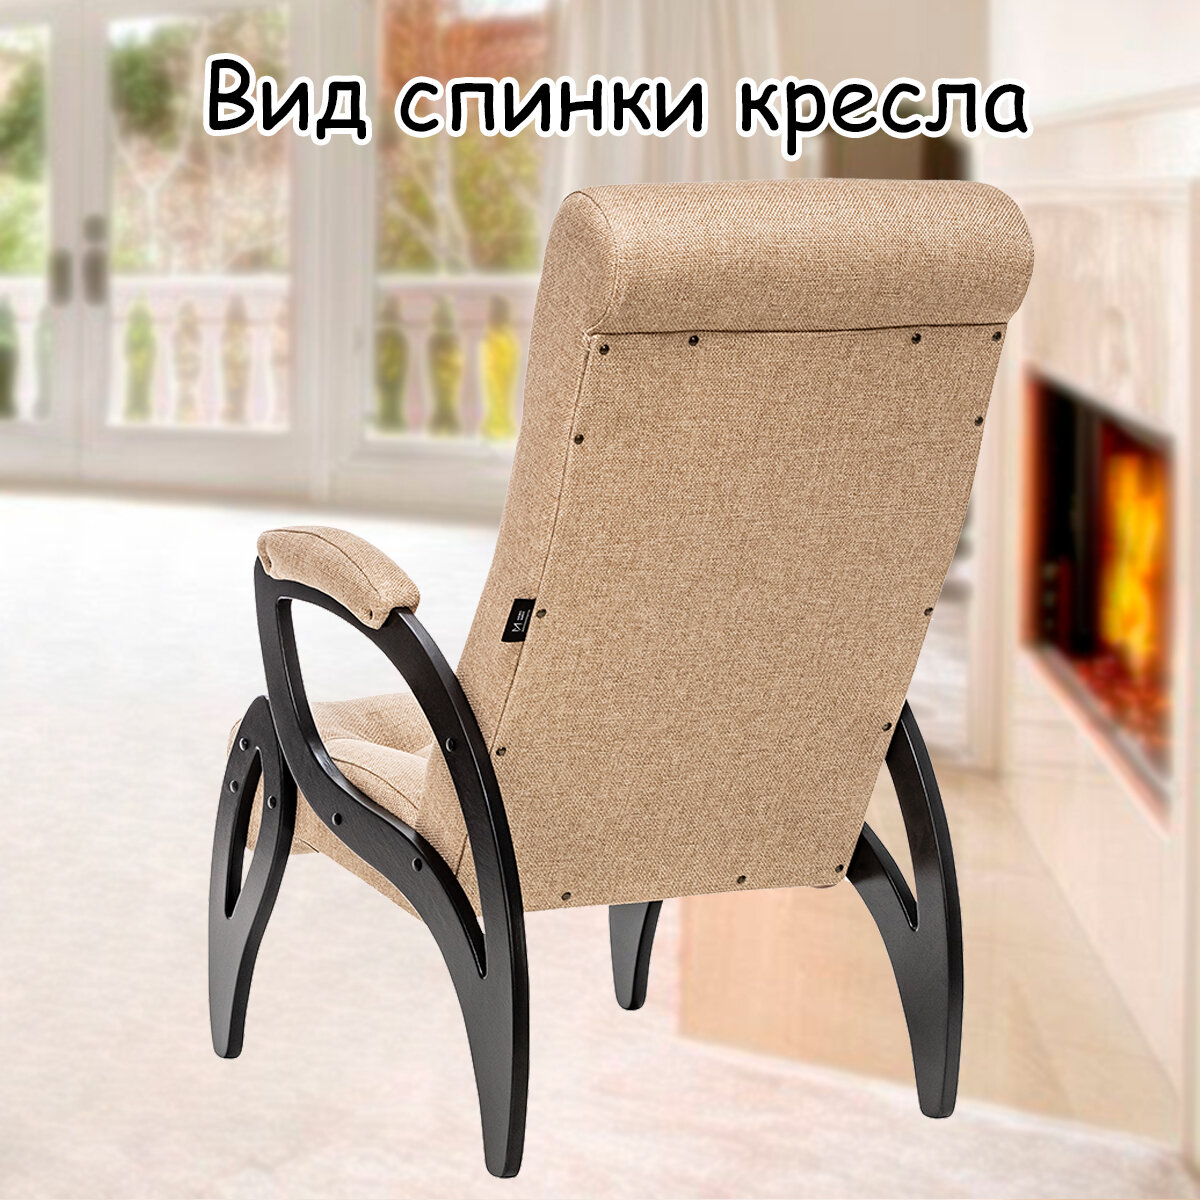 Кресло для взрослых 58.5х87х99 см, модель 51, malta, цвет: Мalta 03А (бежевый), каркас: Venge (черный) - фотография № 8